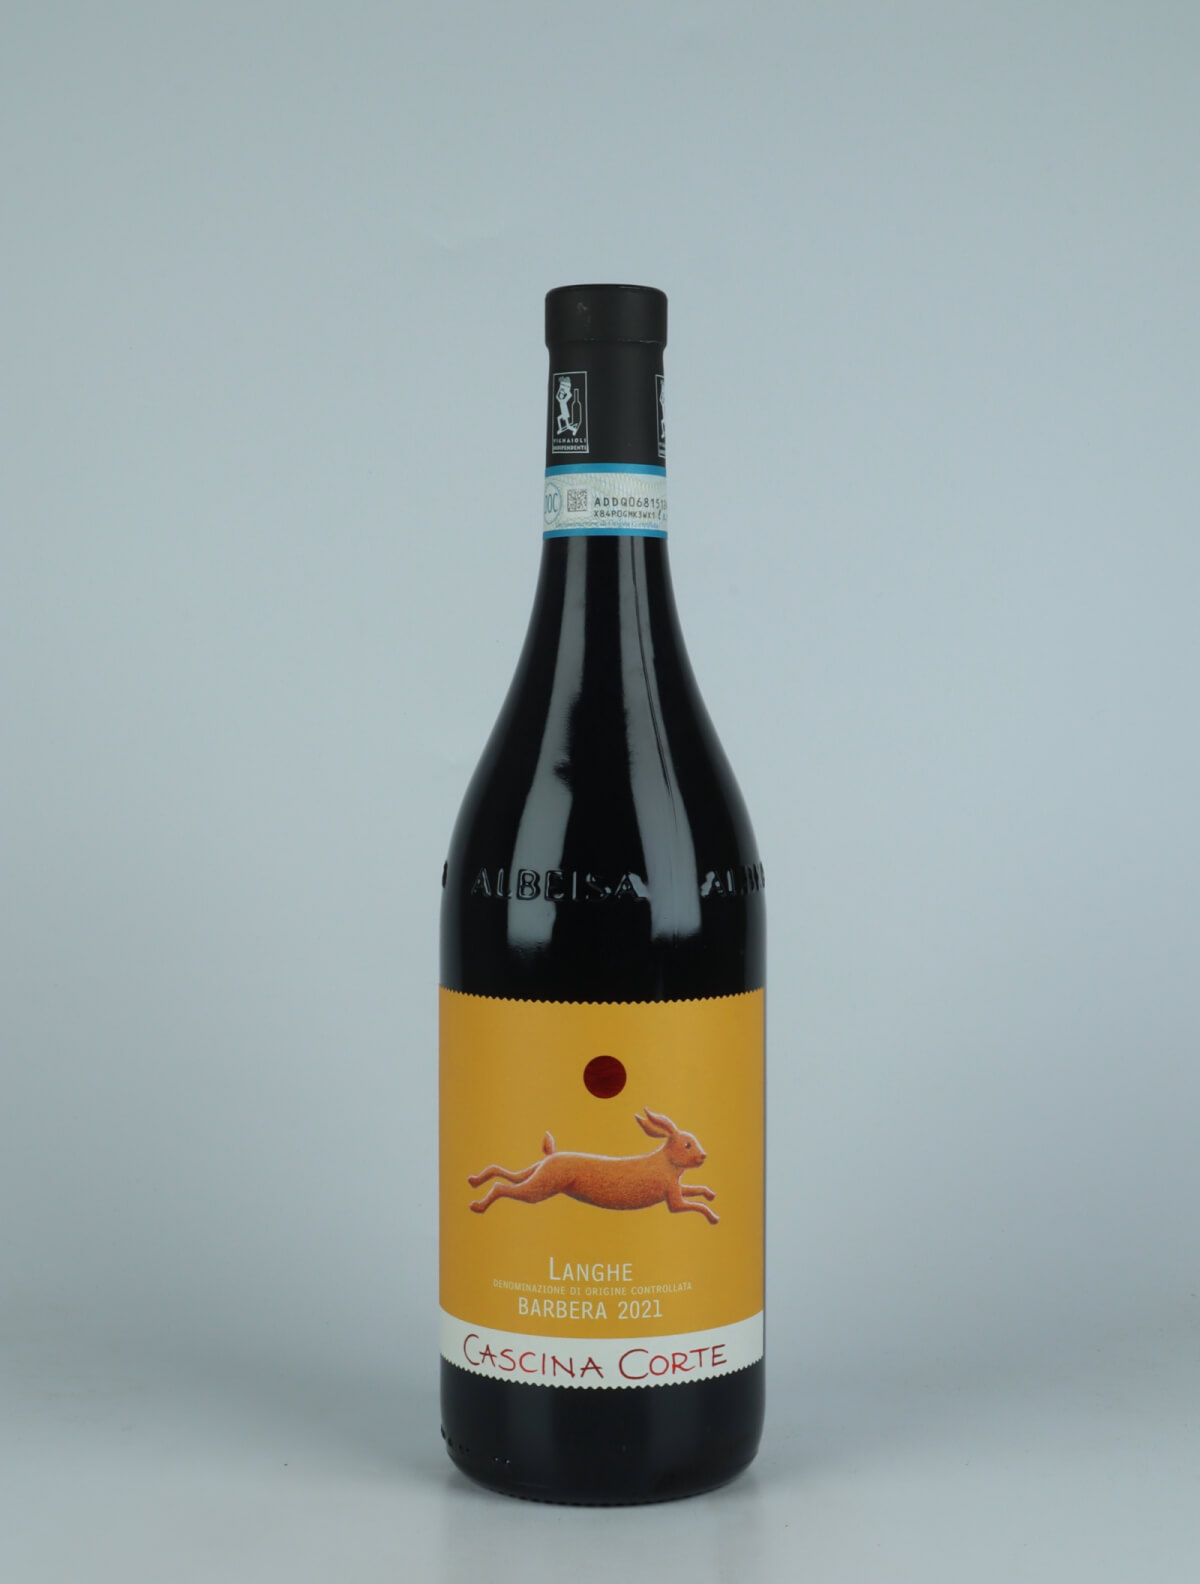 En flaske 2021 Langhe Barbera Rødvin fra Cascina Corte, Piemonte i Italien